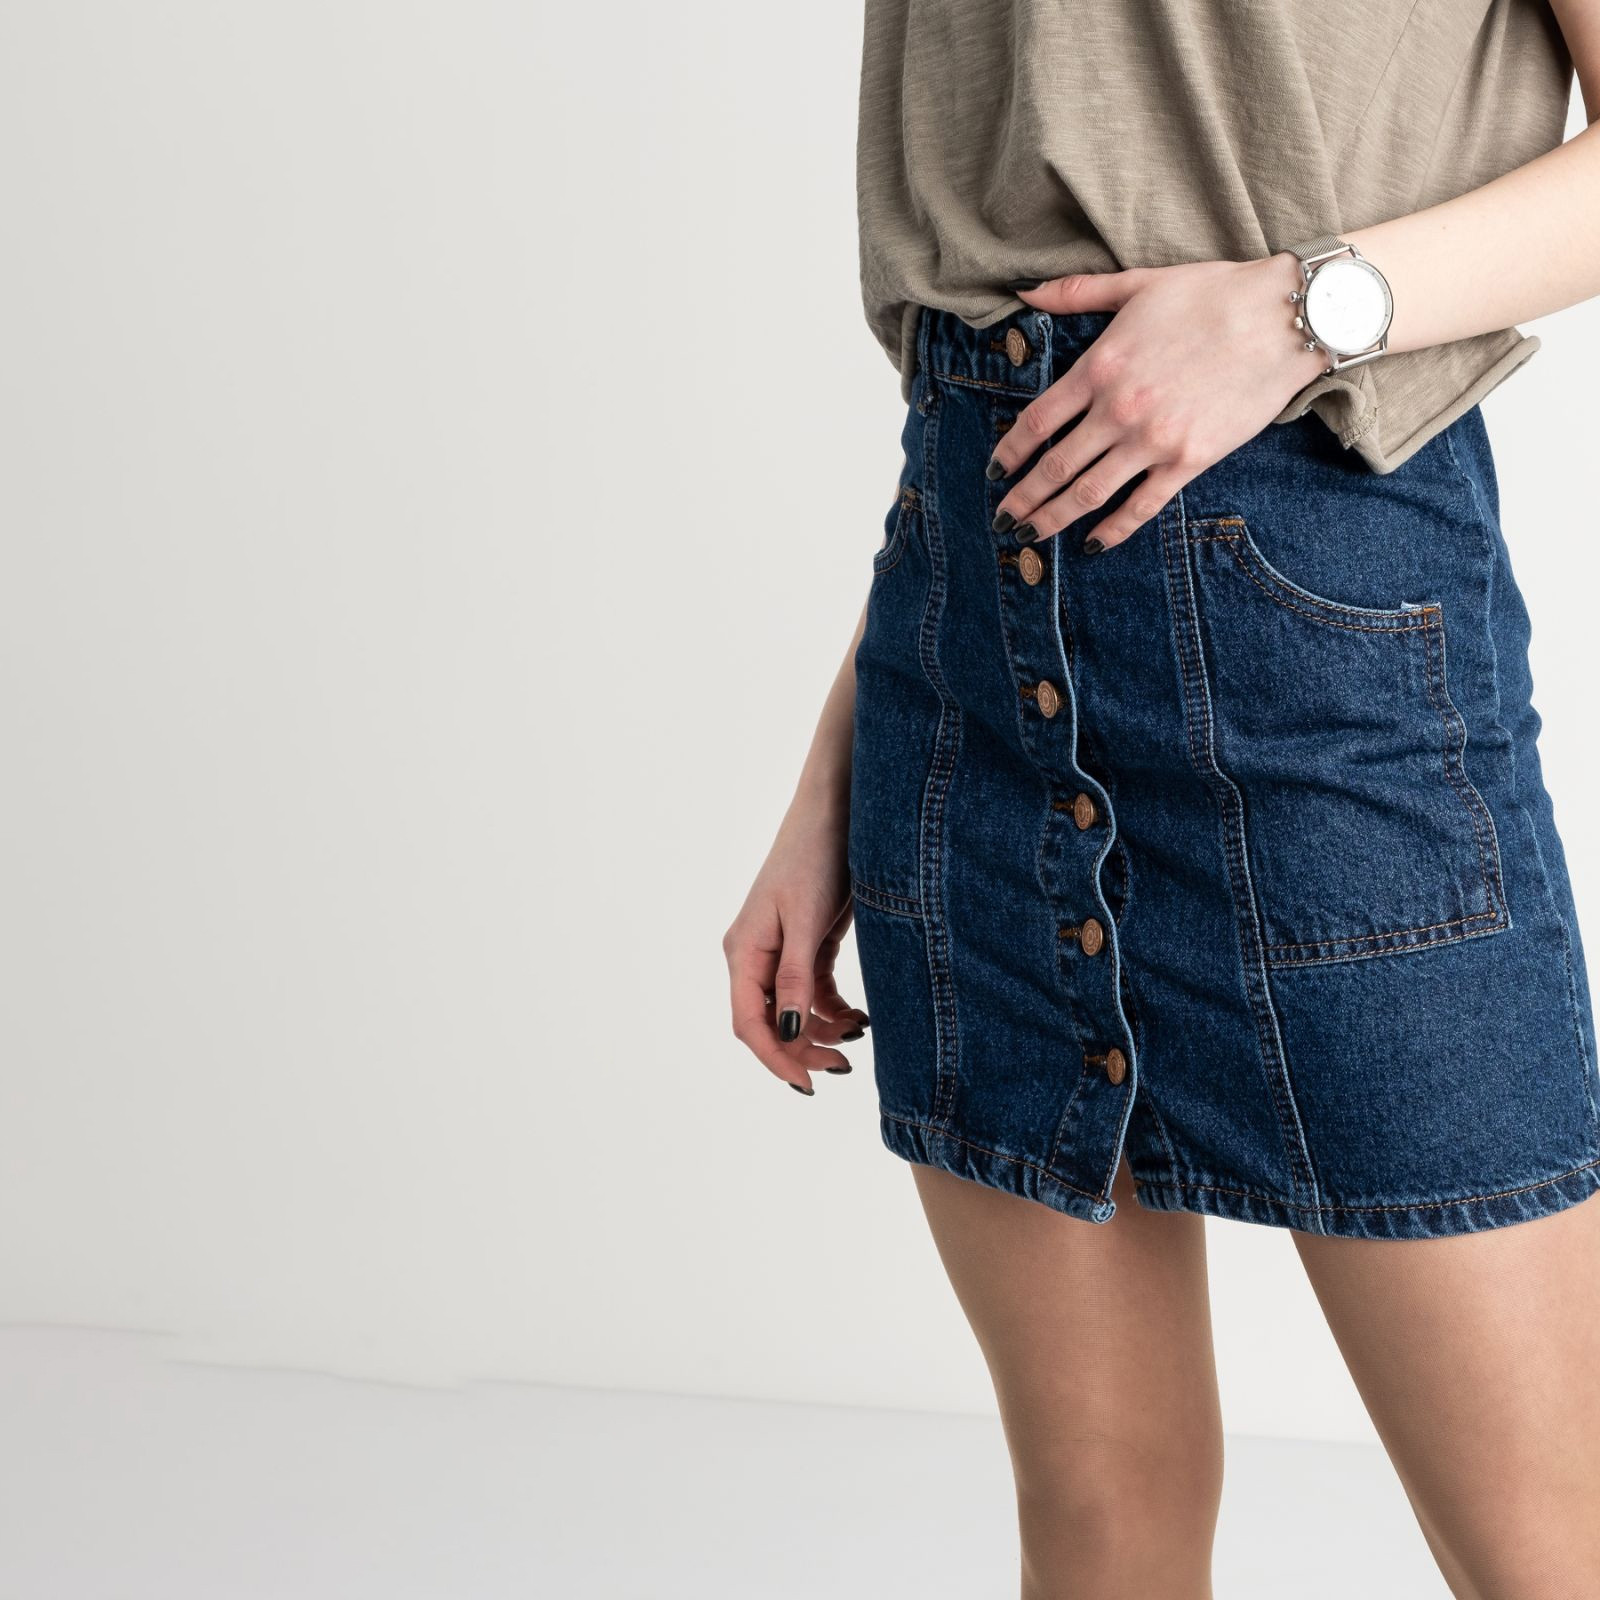 2015-1 Ponza юбка джинсовая на пуговицах синяя котоновая (6 ед. размеры: 34/2.36/2.38/2)